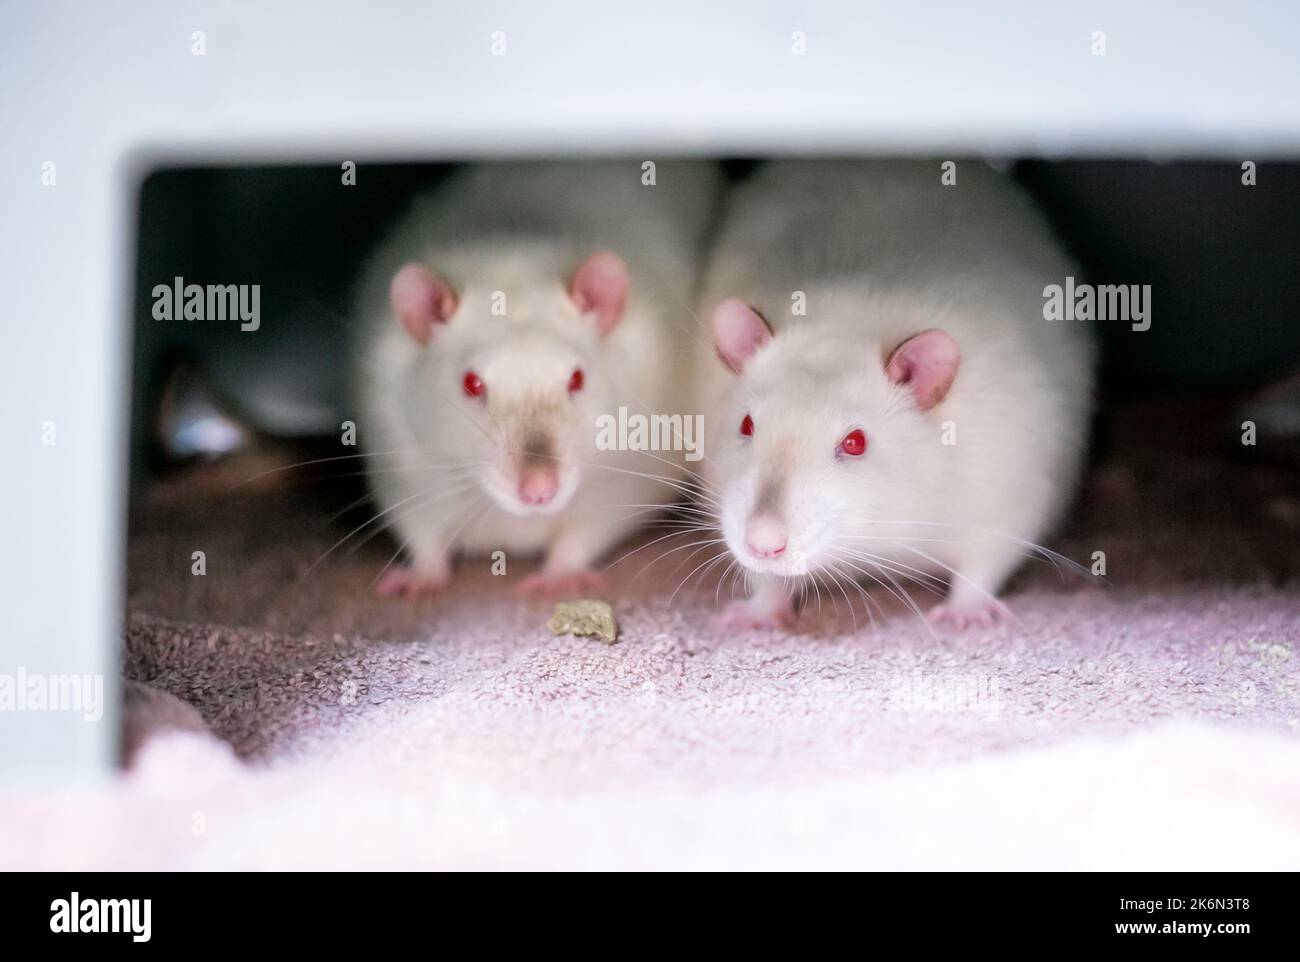 Deux rats albinos blancs avec des yeux rouges assis ensemble dans une cage Banque D'Images